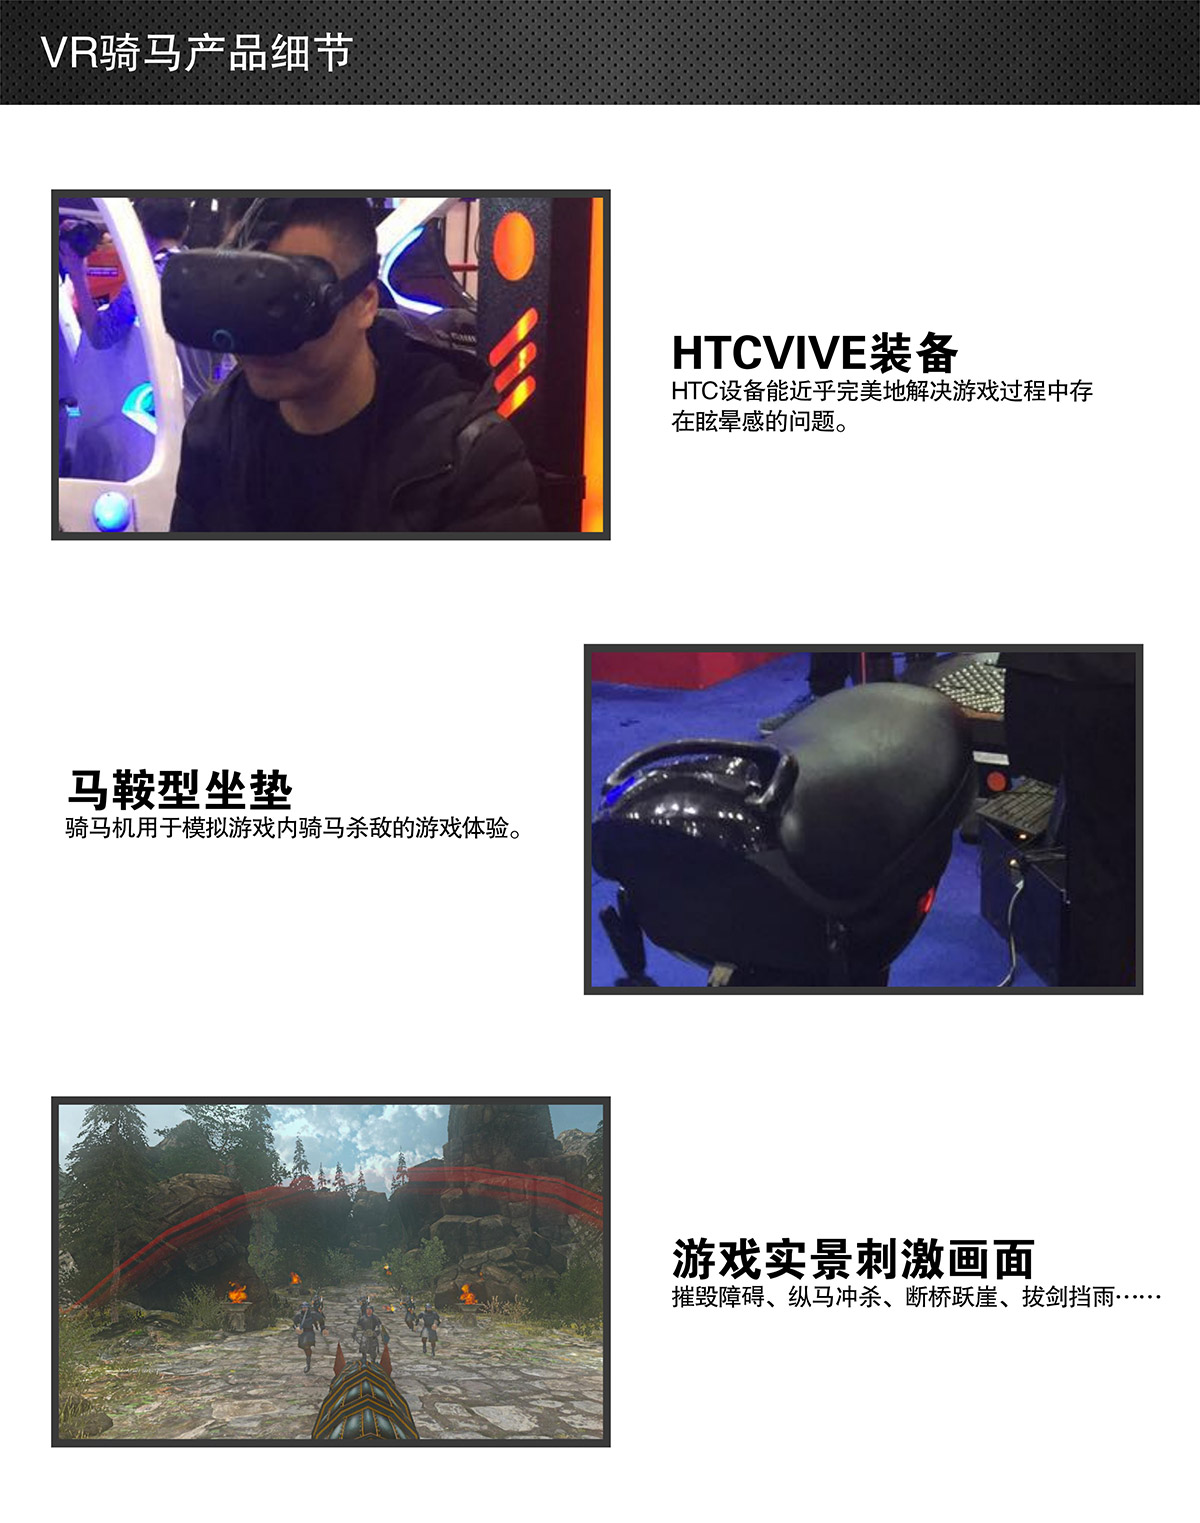 教育体验VR骑马细节展示.jpg